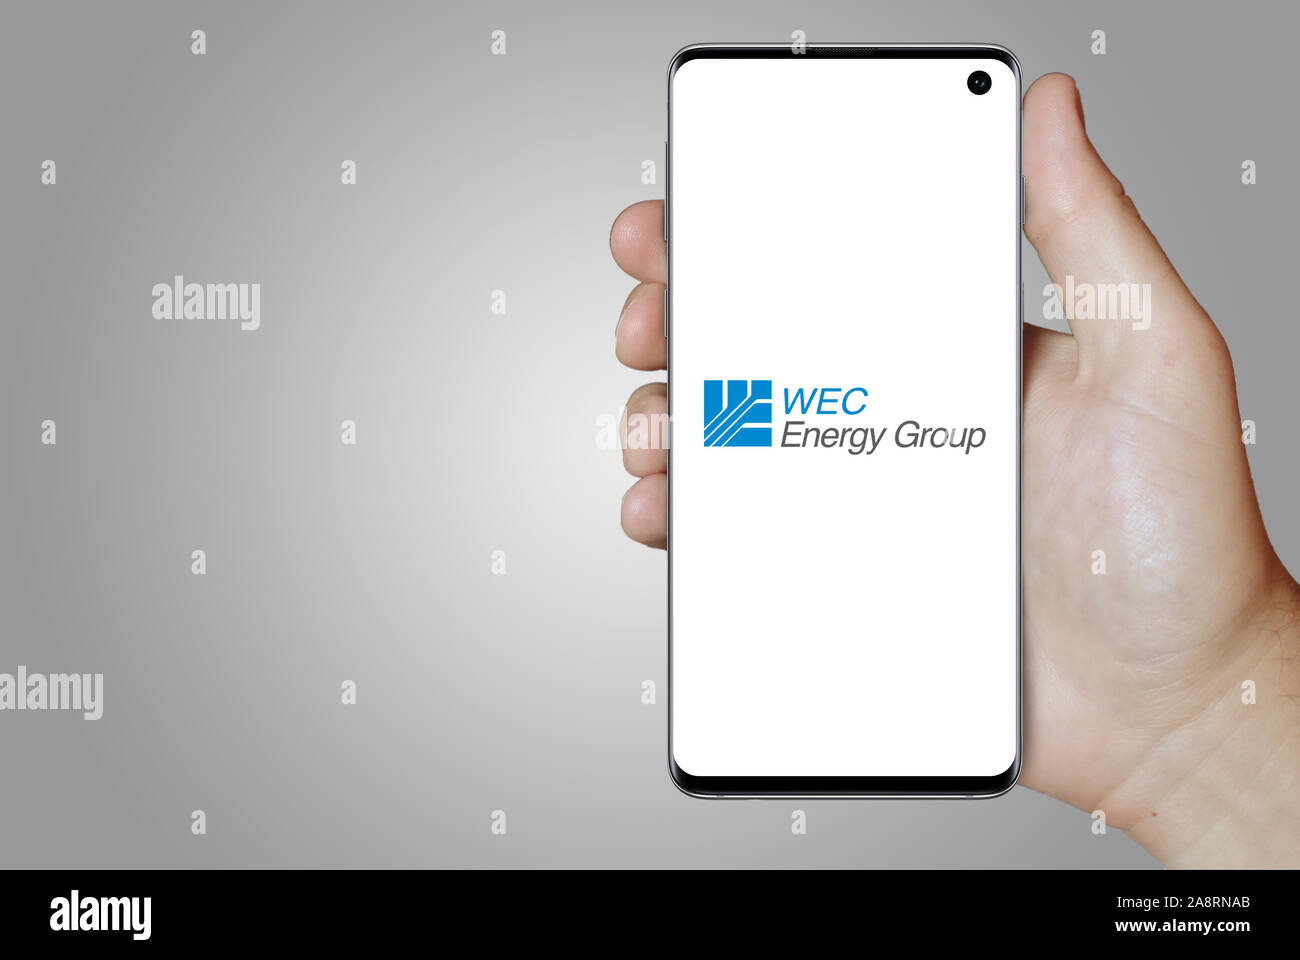 Logo der öffentlichen Unternehmen Wec Energy Group Inc auf dem Smartphone angezeigt. Grauer Hintergrund. Credit: PIXDUCE Stockfoto